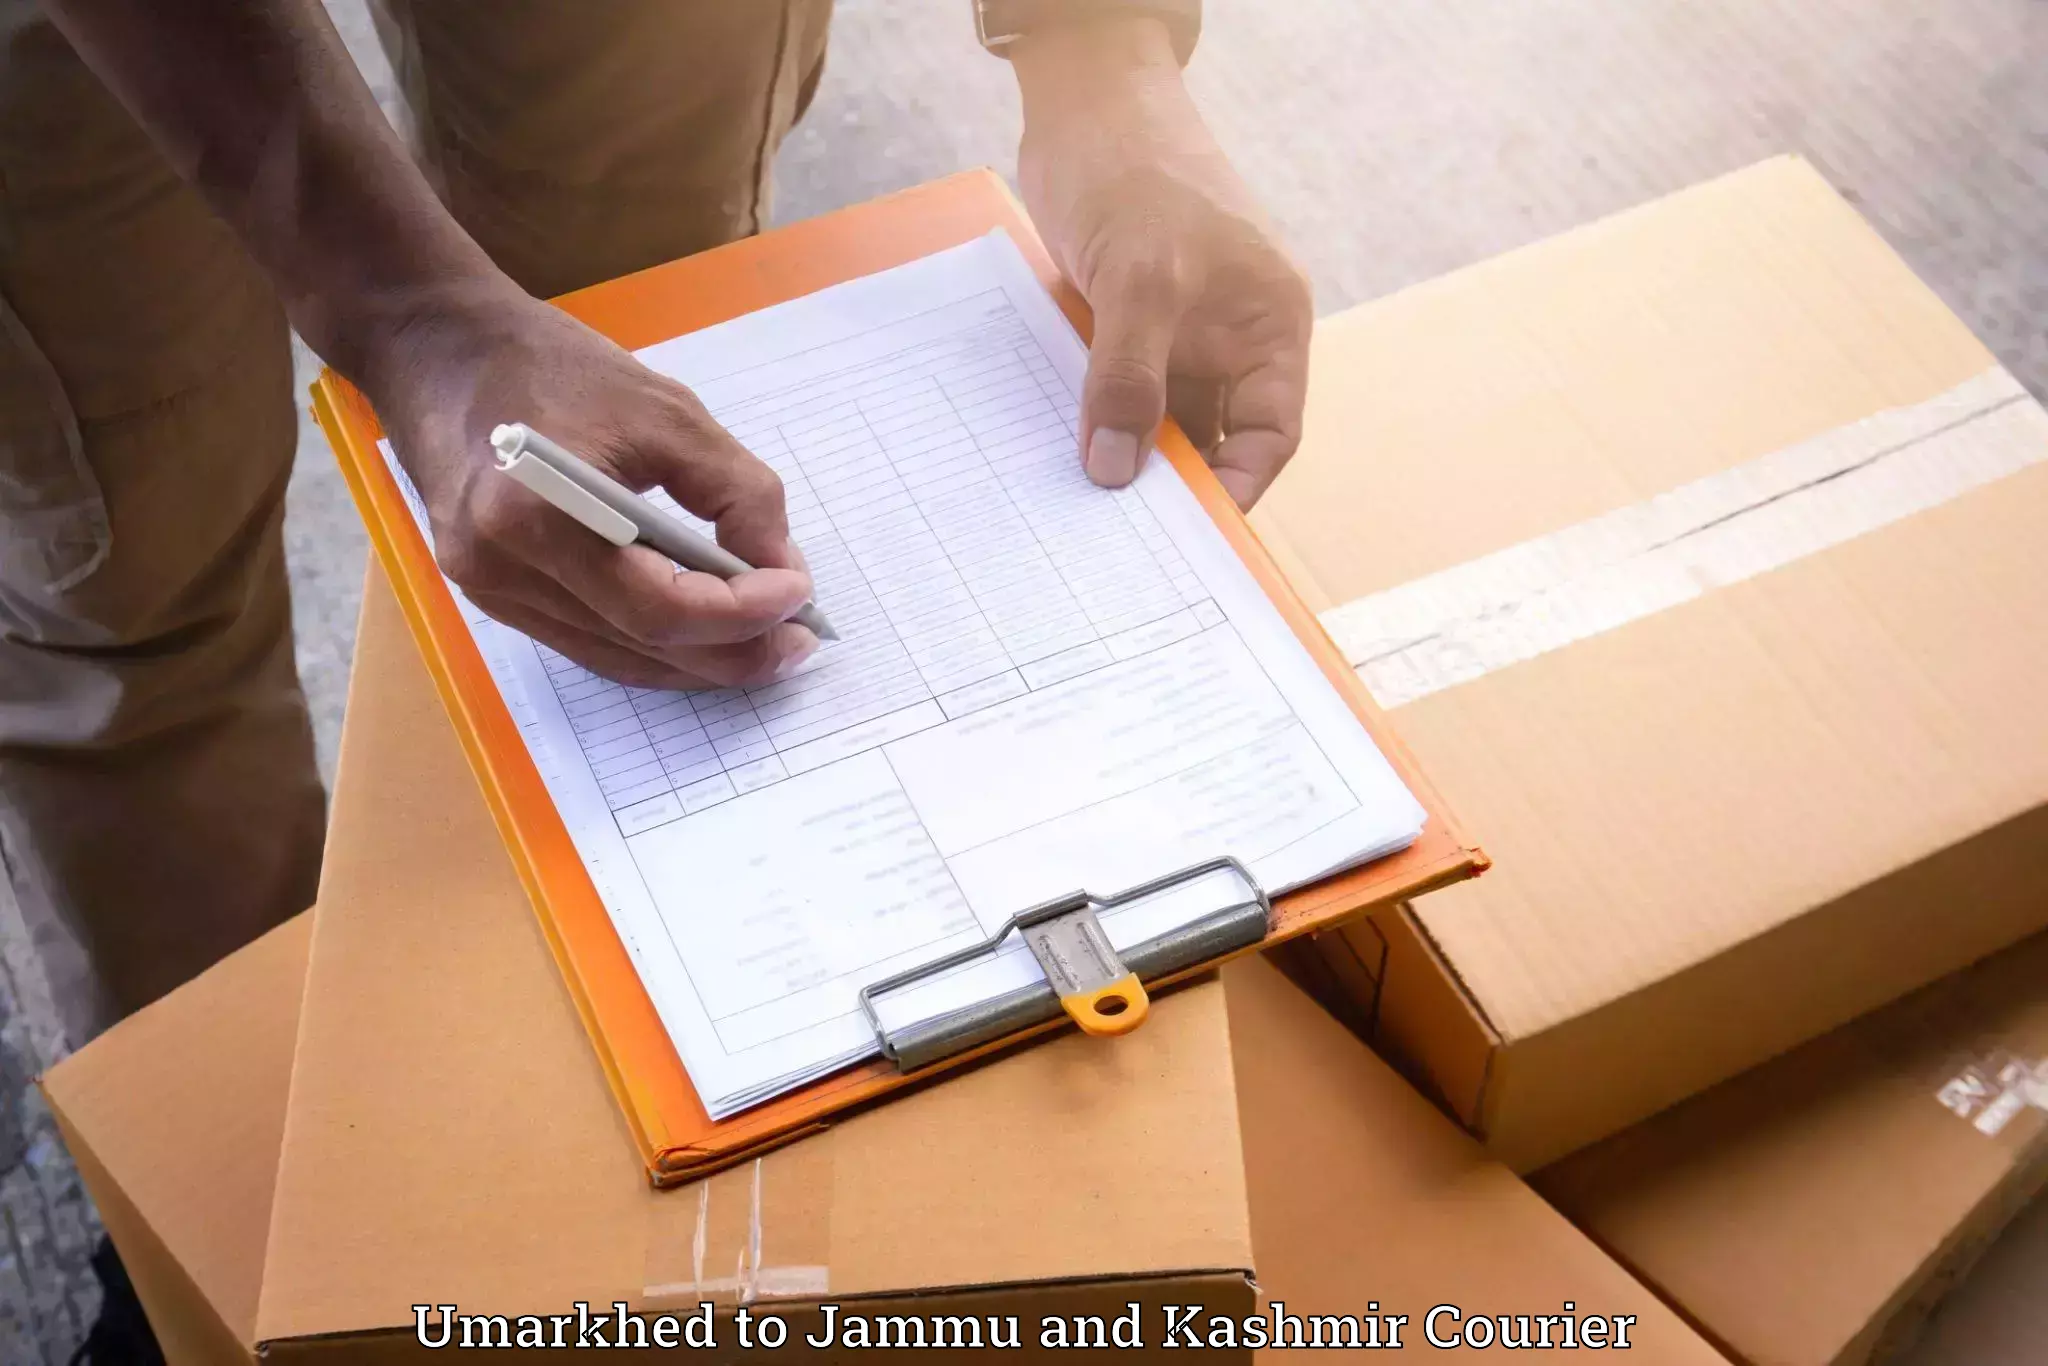 Professional goods transport in Umarkhed to Srinagar Kashmir